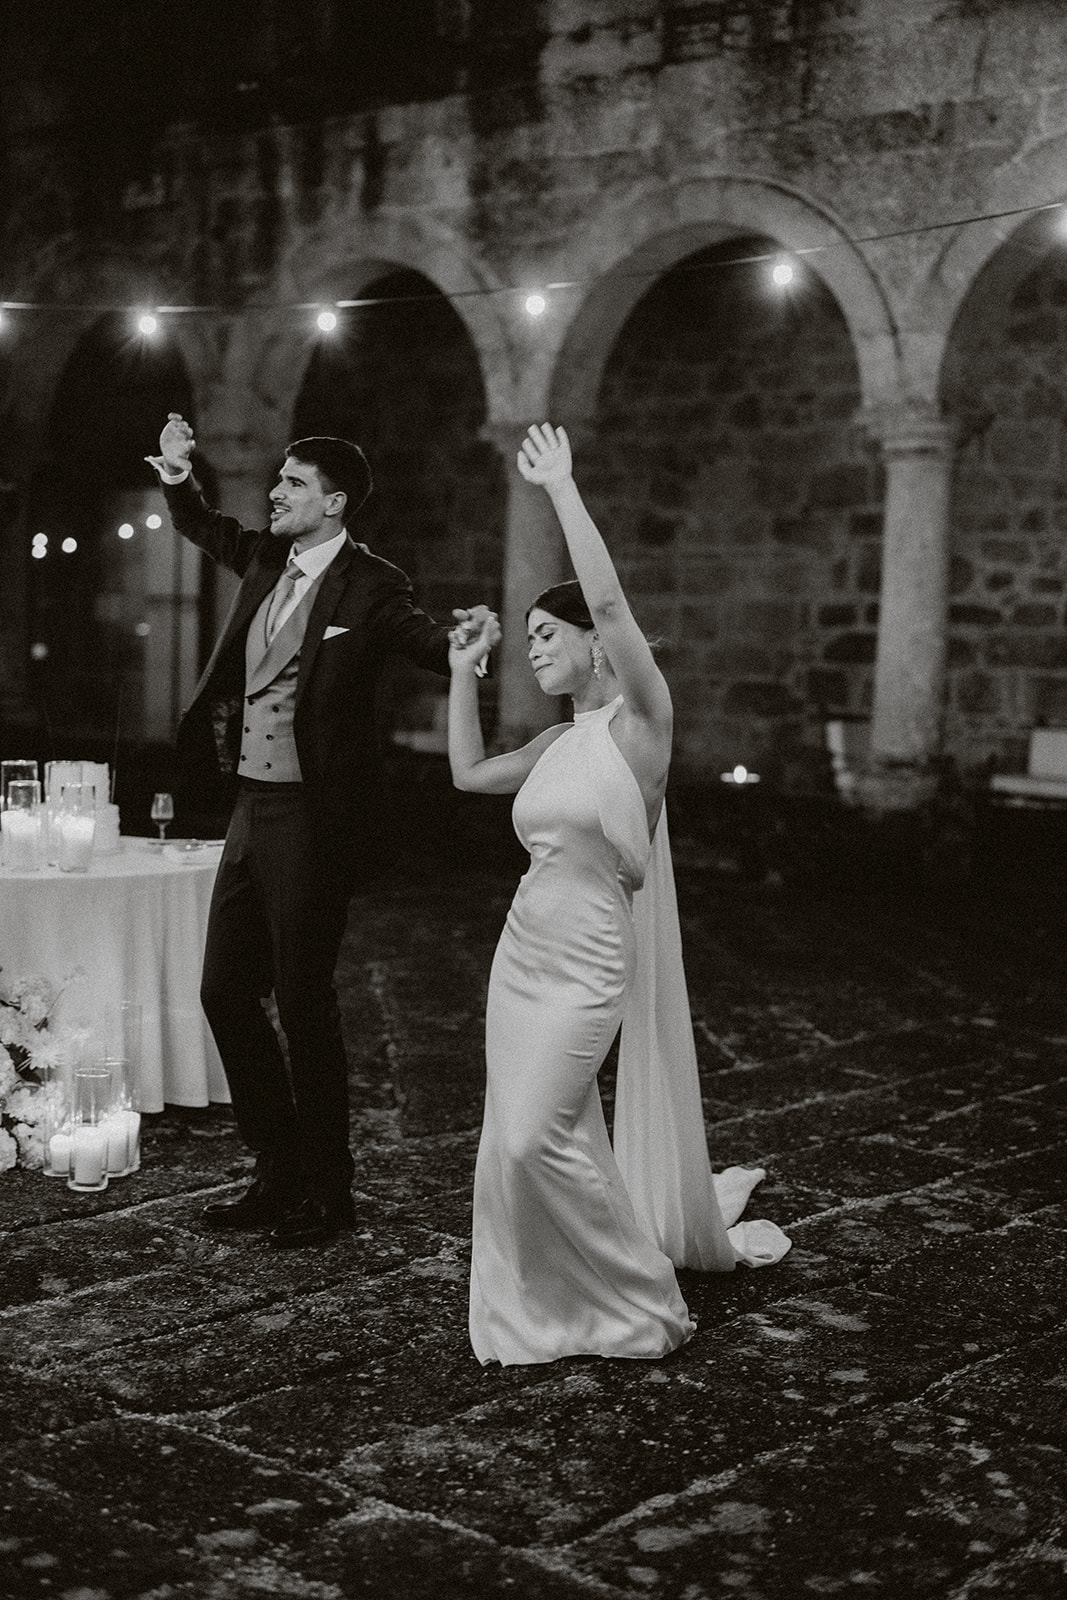 Modern Editorial wedding at a luxury hotel near porto portugal Europe.